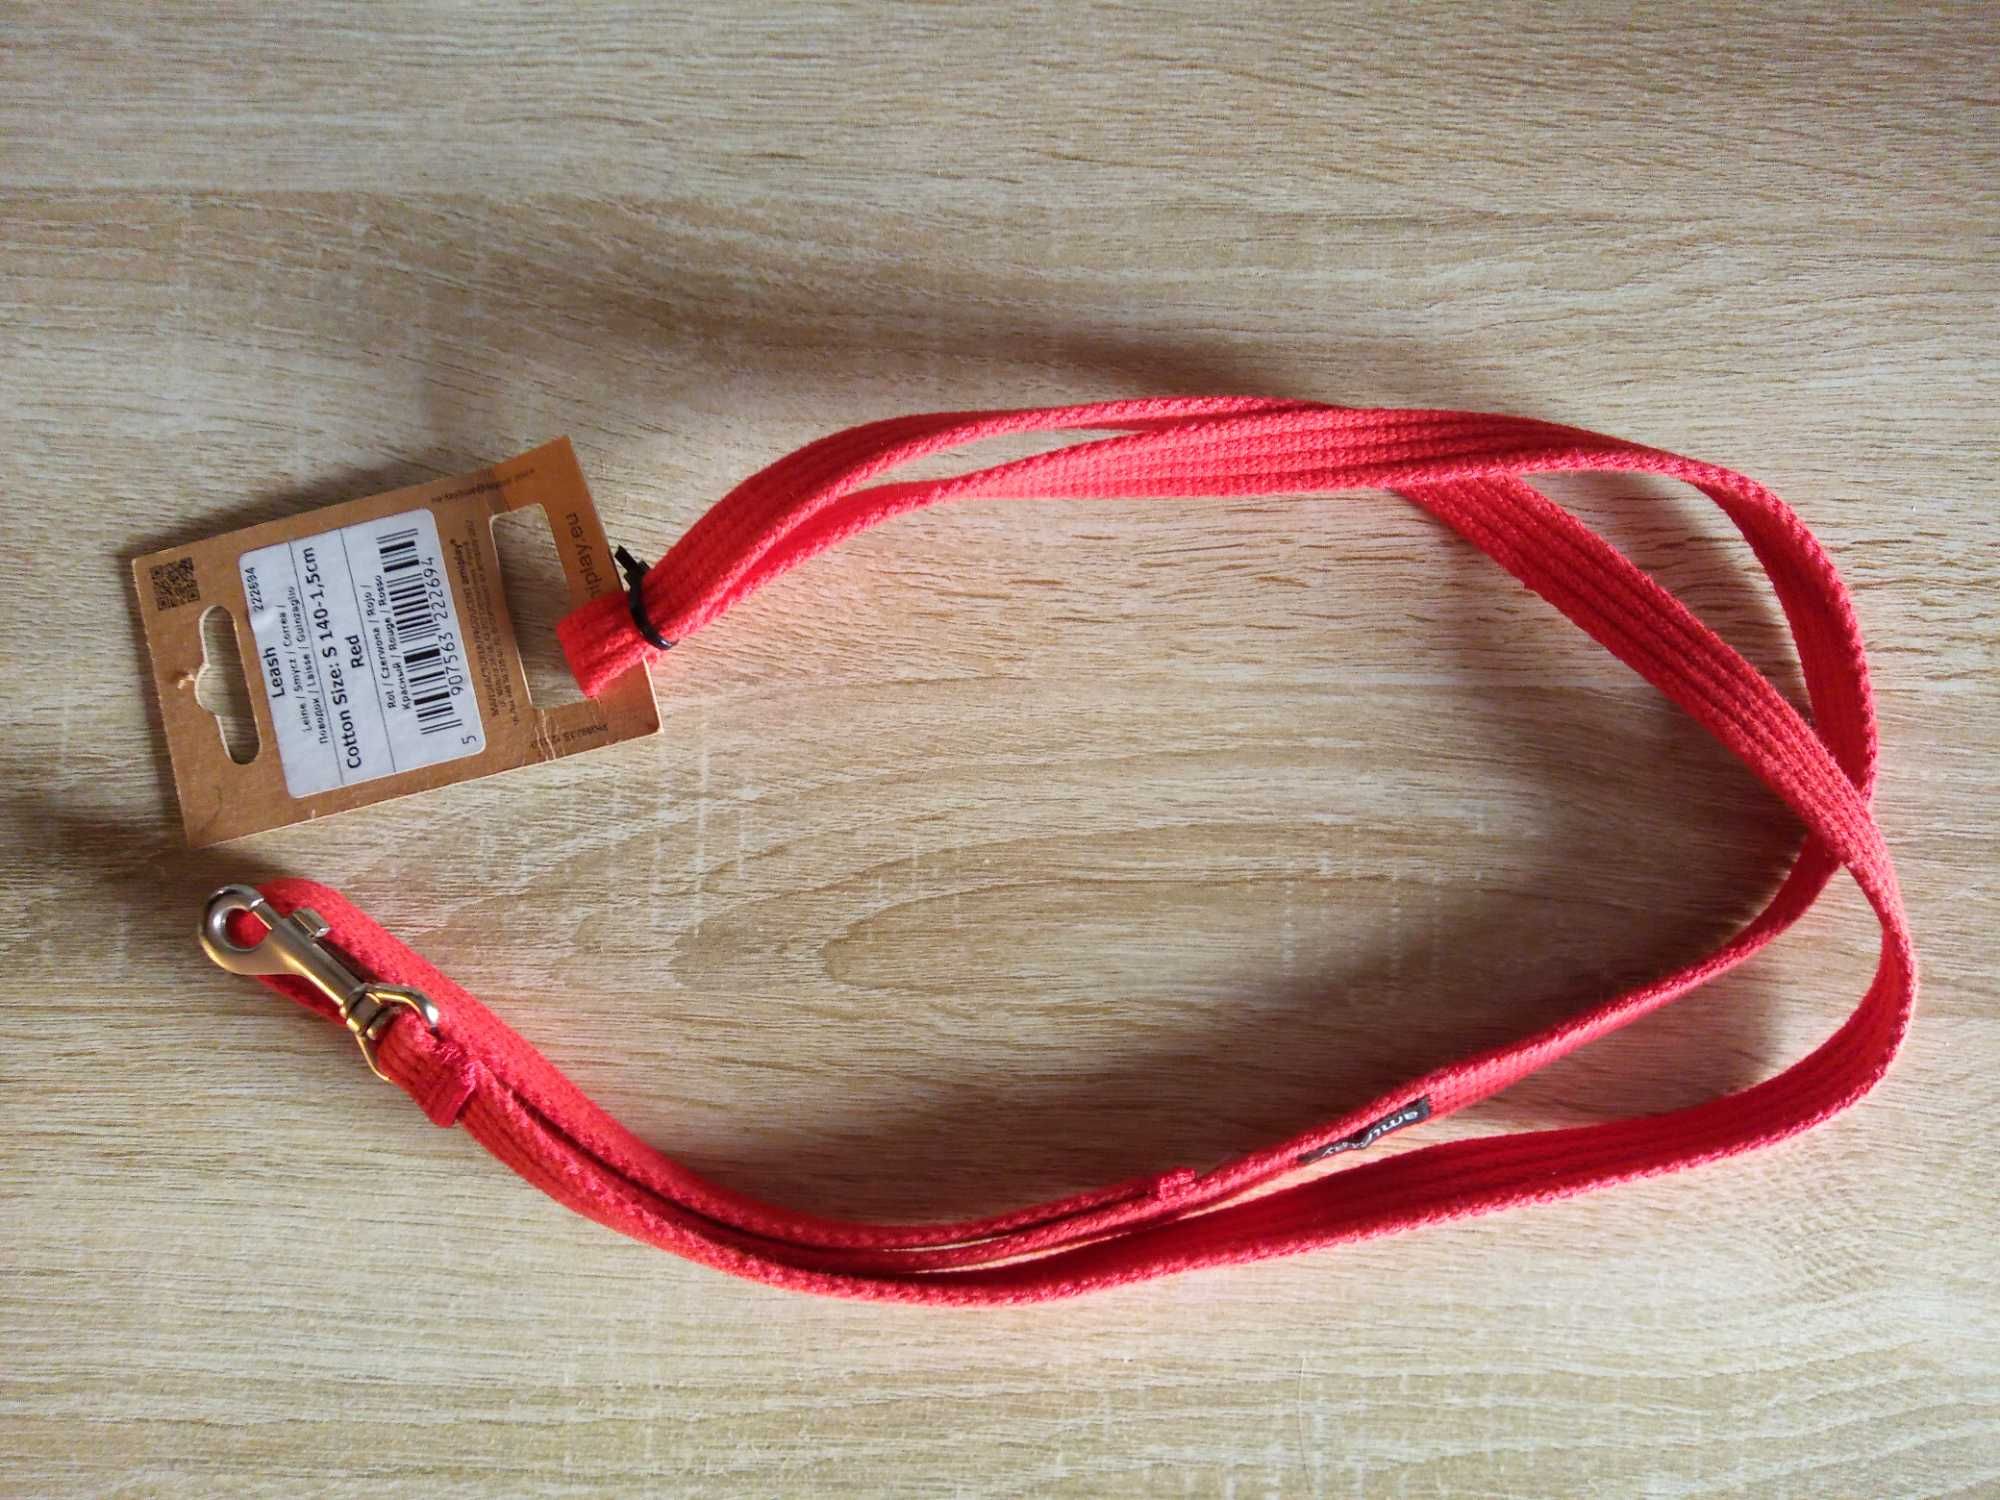 amiplay Smycz Cotton S 140 cm 1,5 cm czerwona -50%